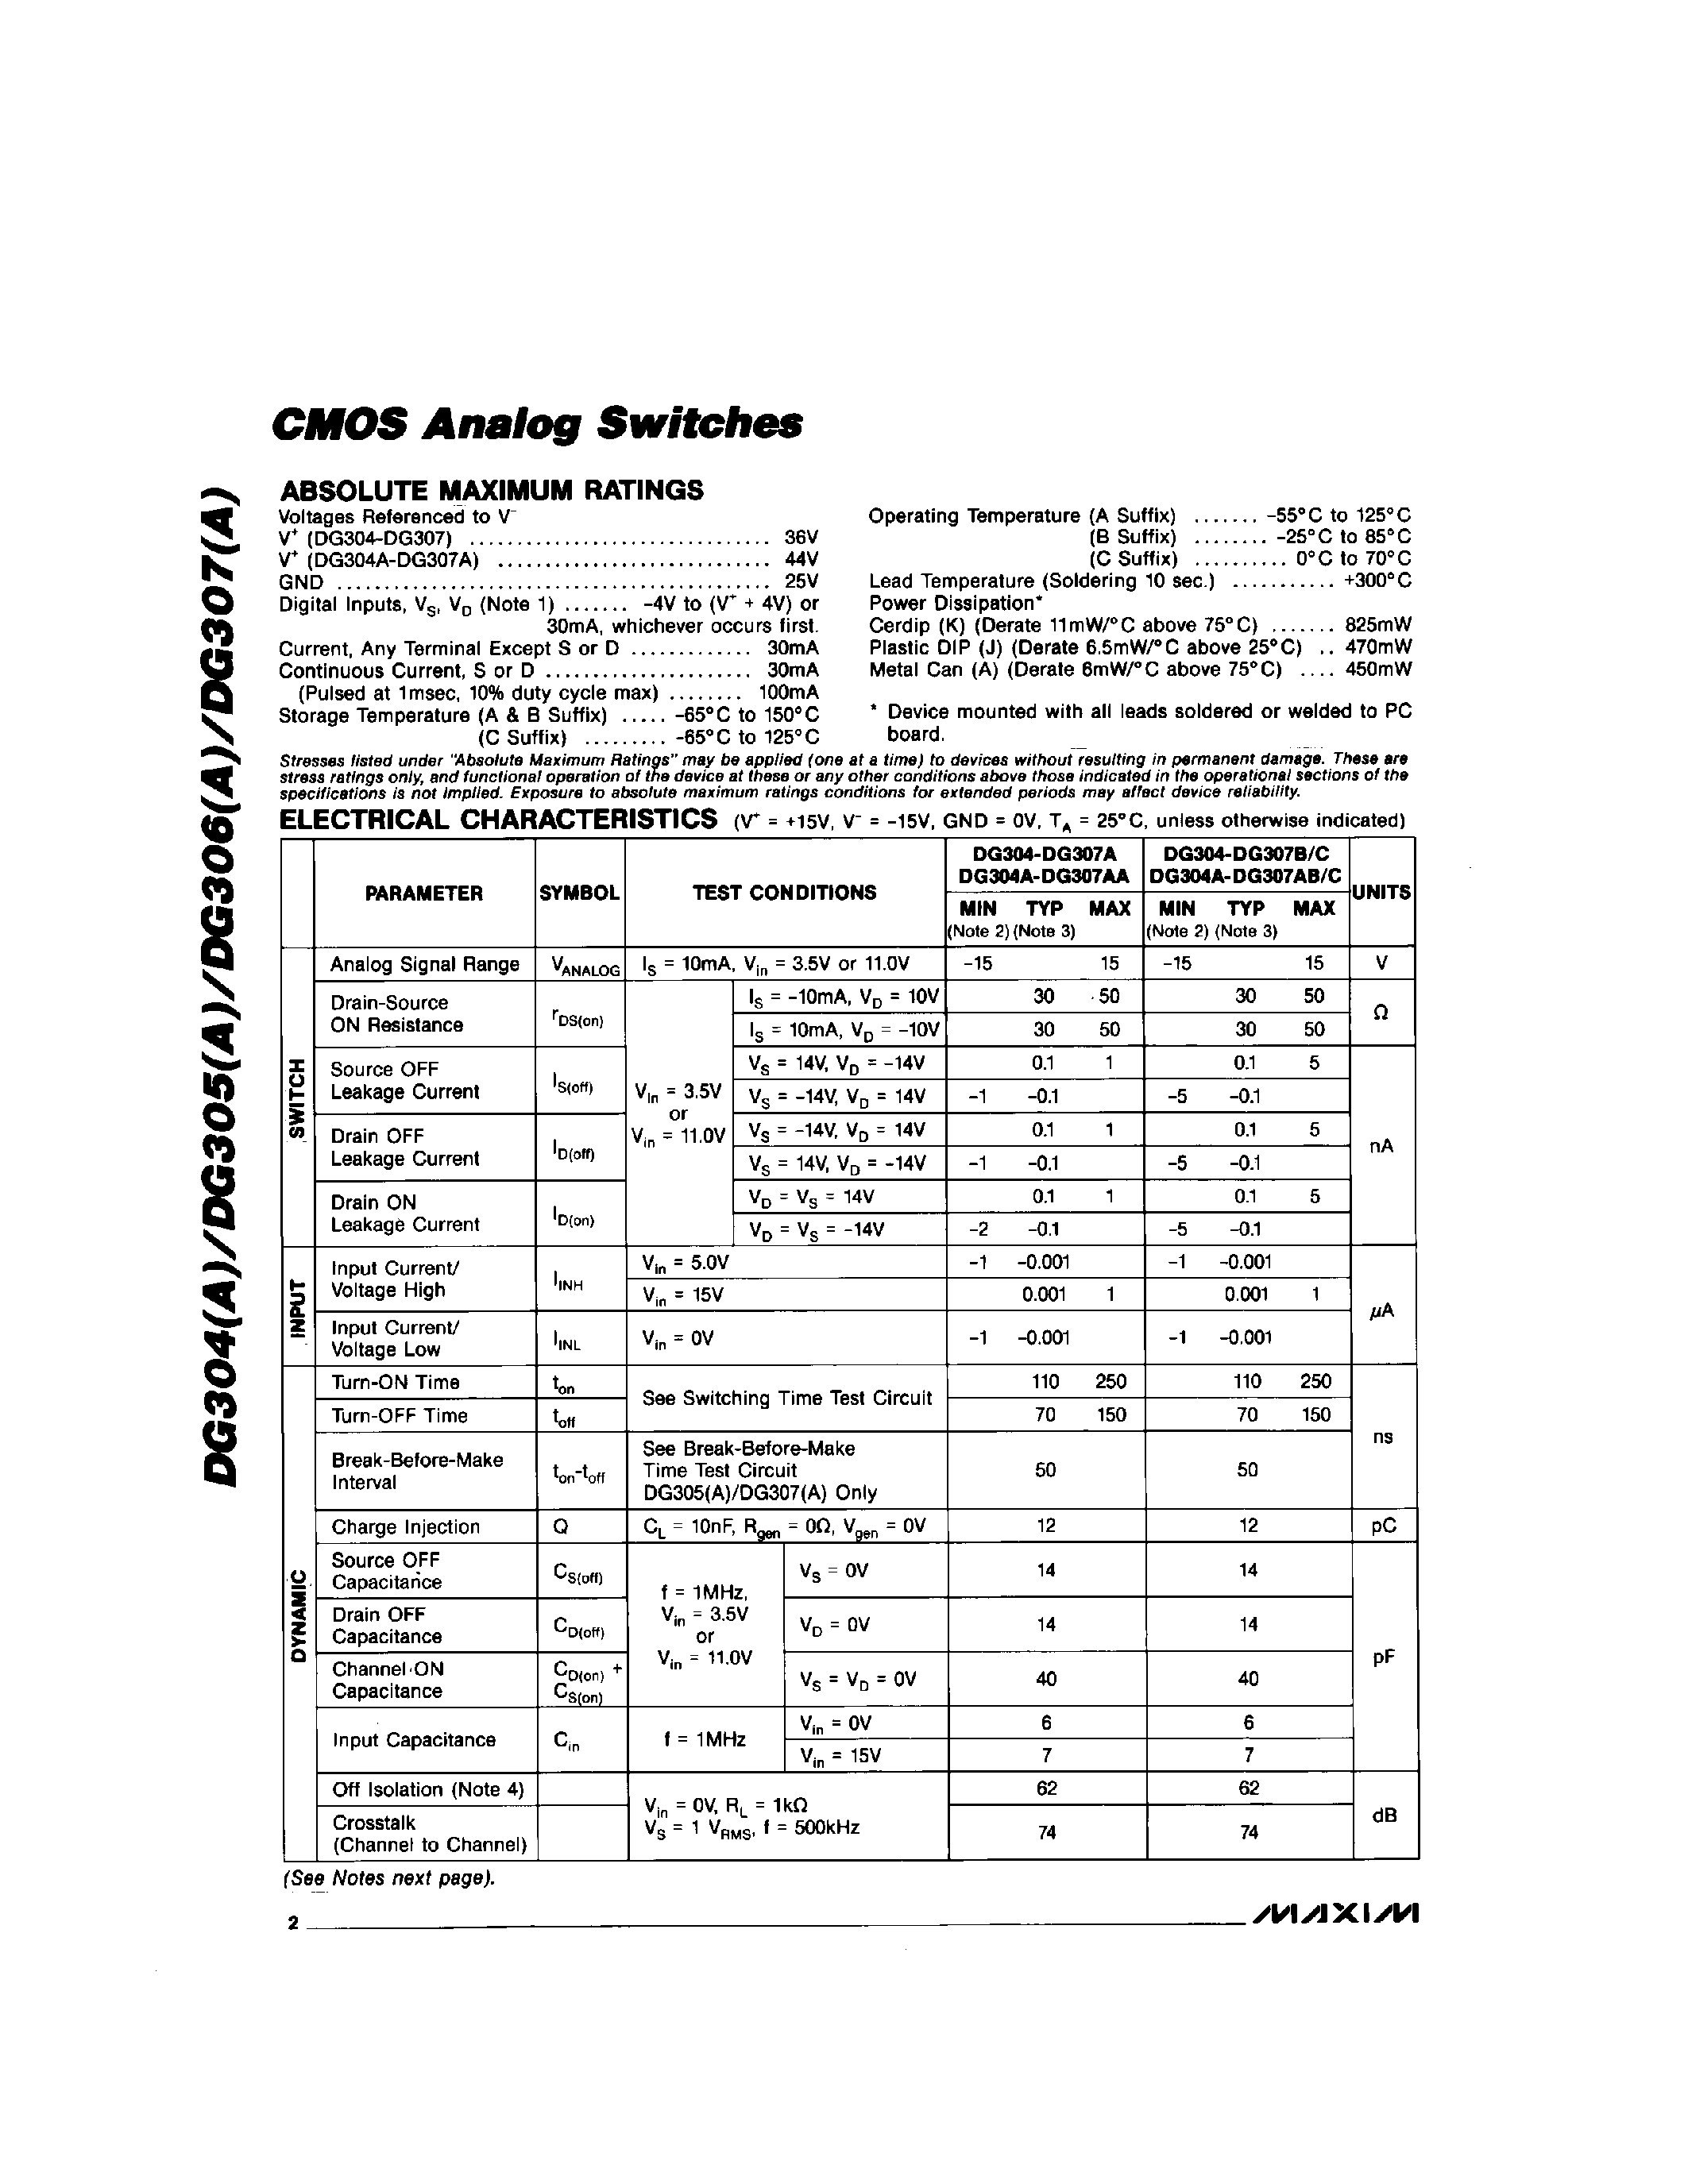 Datasheet DG307C/D - CMOS Analog Switchs page 2